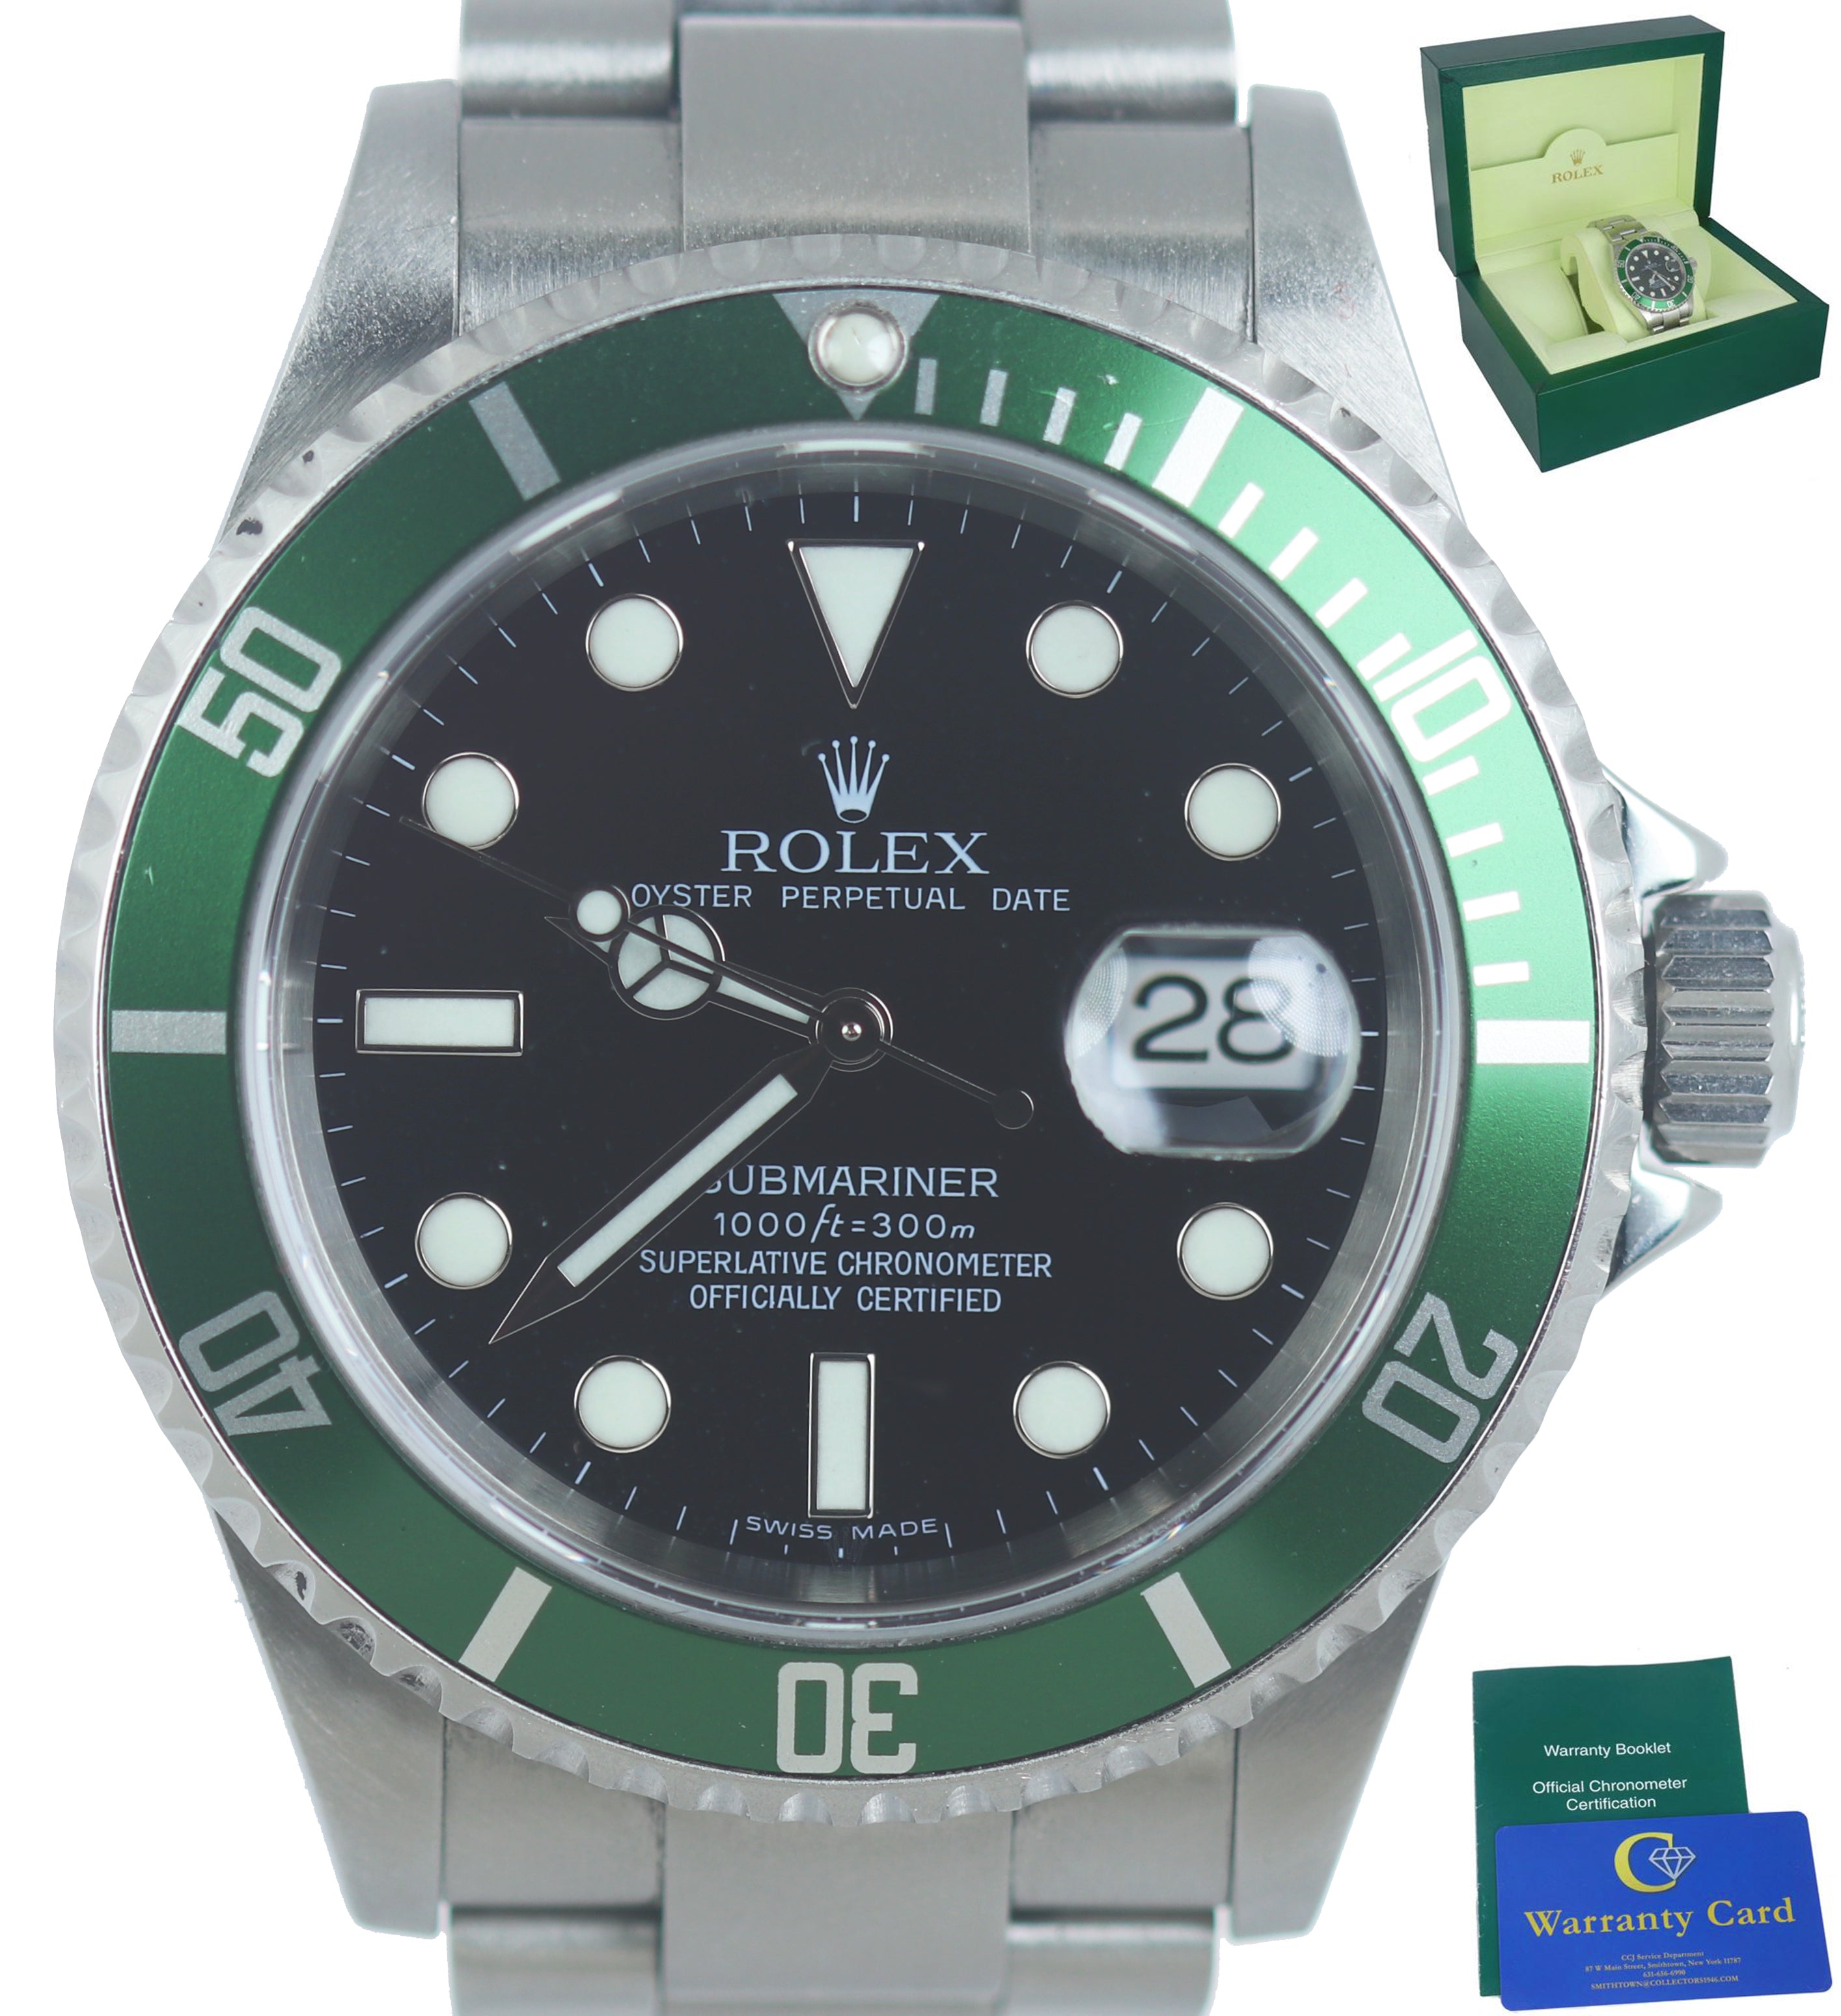 2007 Rolex 'Kermit' Submariner Date 16610 T LV Stainless Black Green 40mm Watch